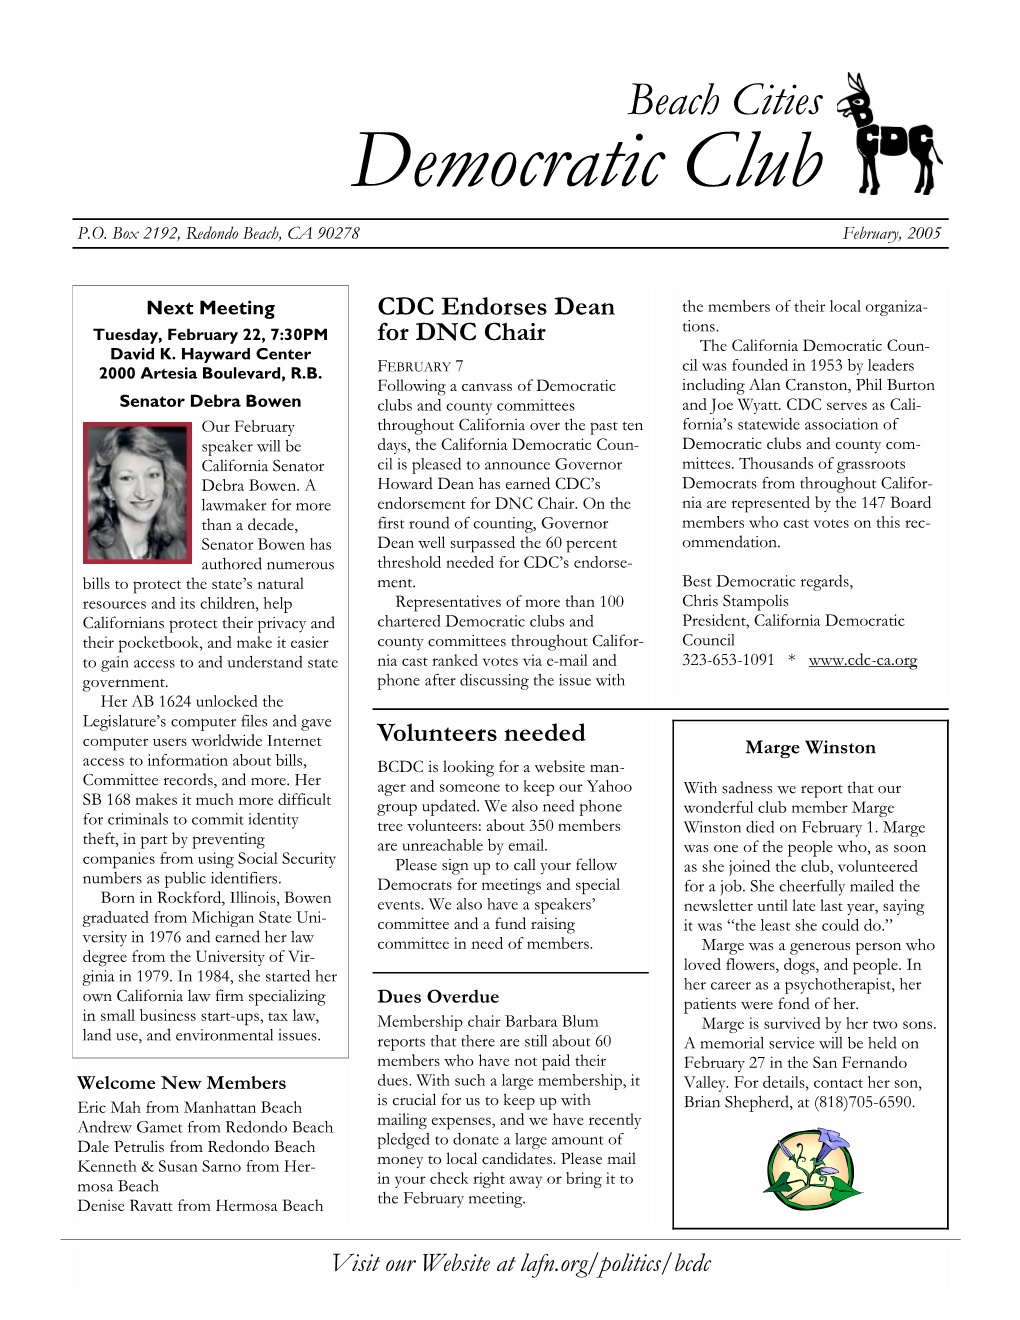 Democratic Club P.O